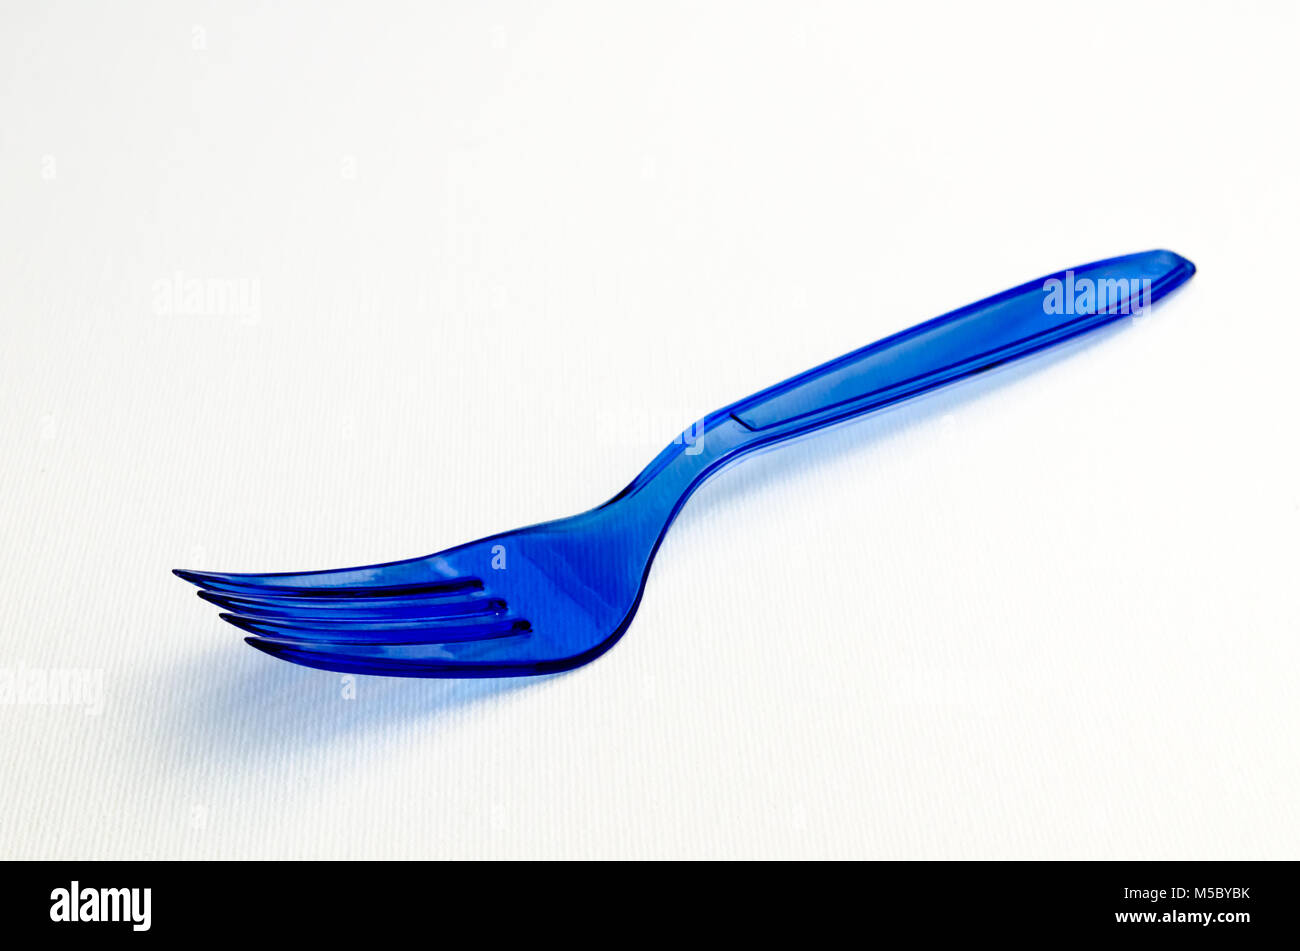 Un studio photo d'une fourchette en plastique bleu Banque D'Images